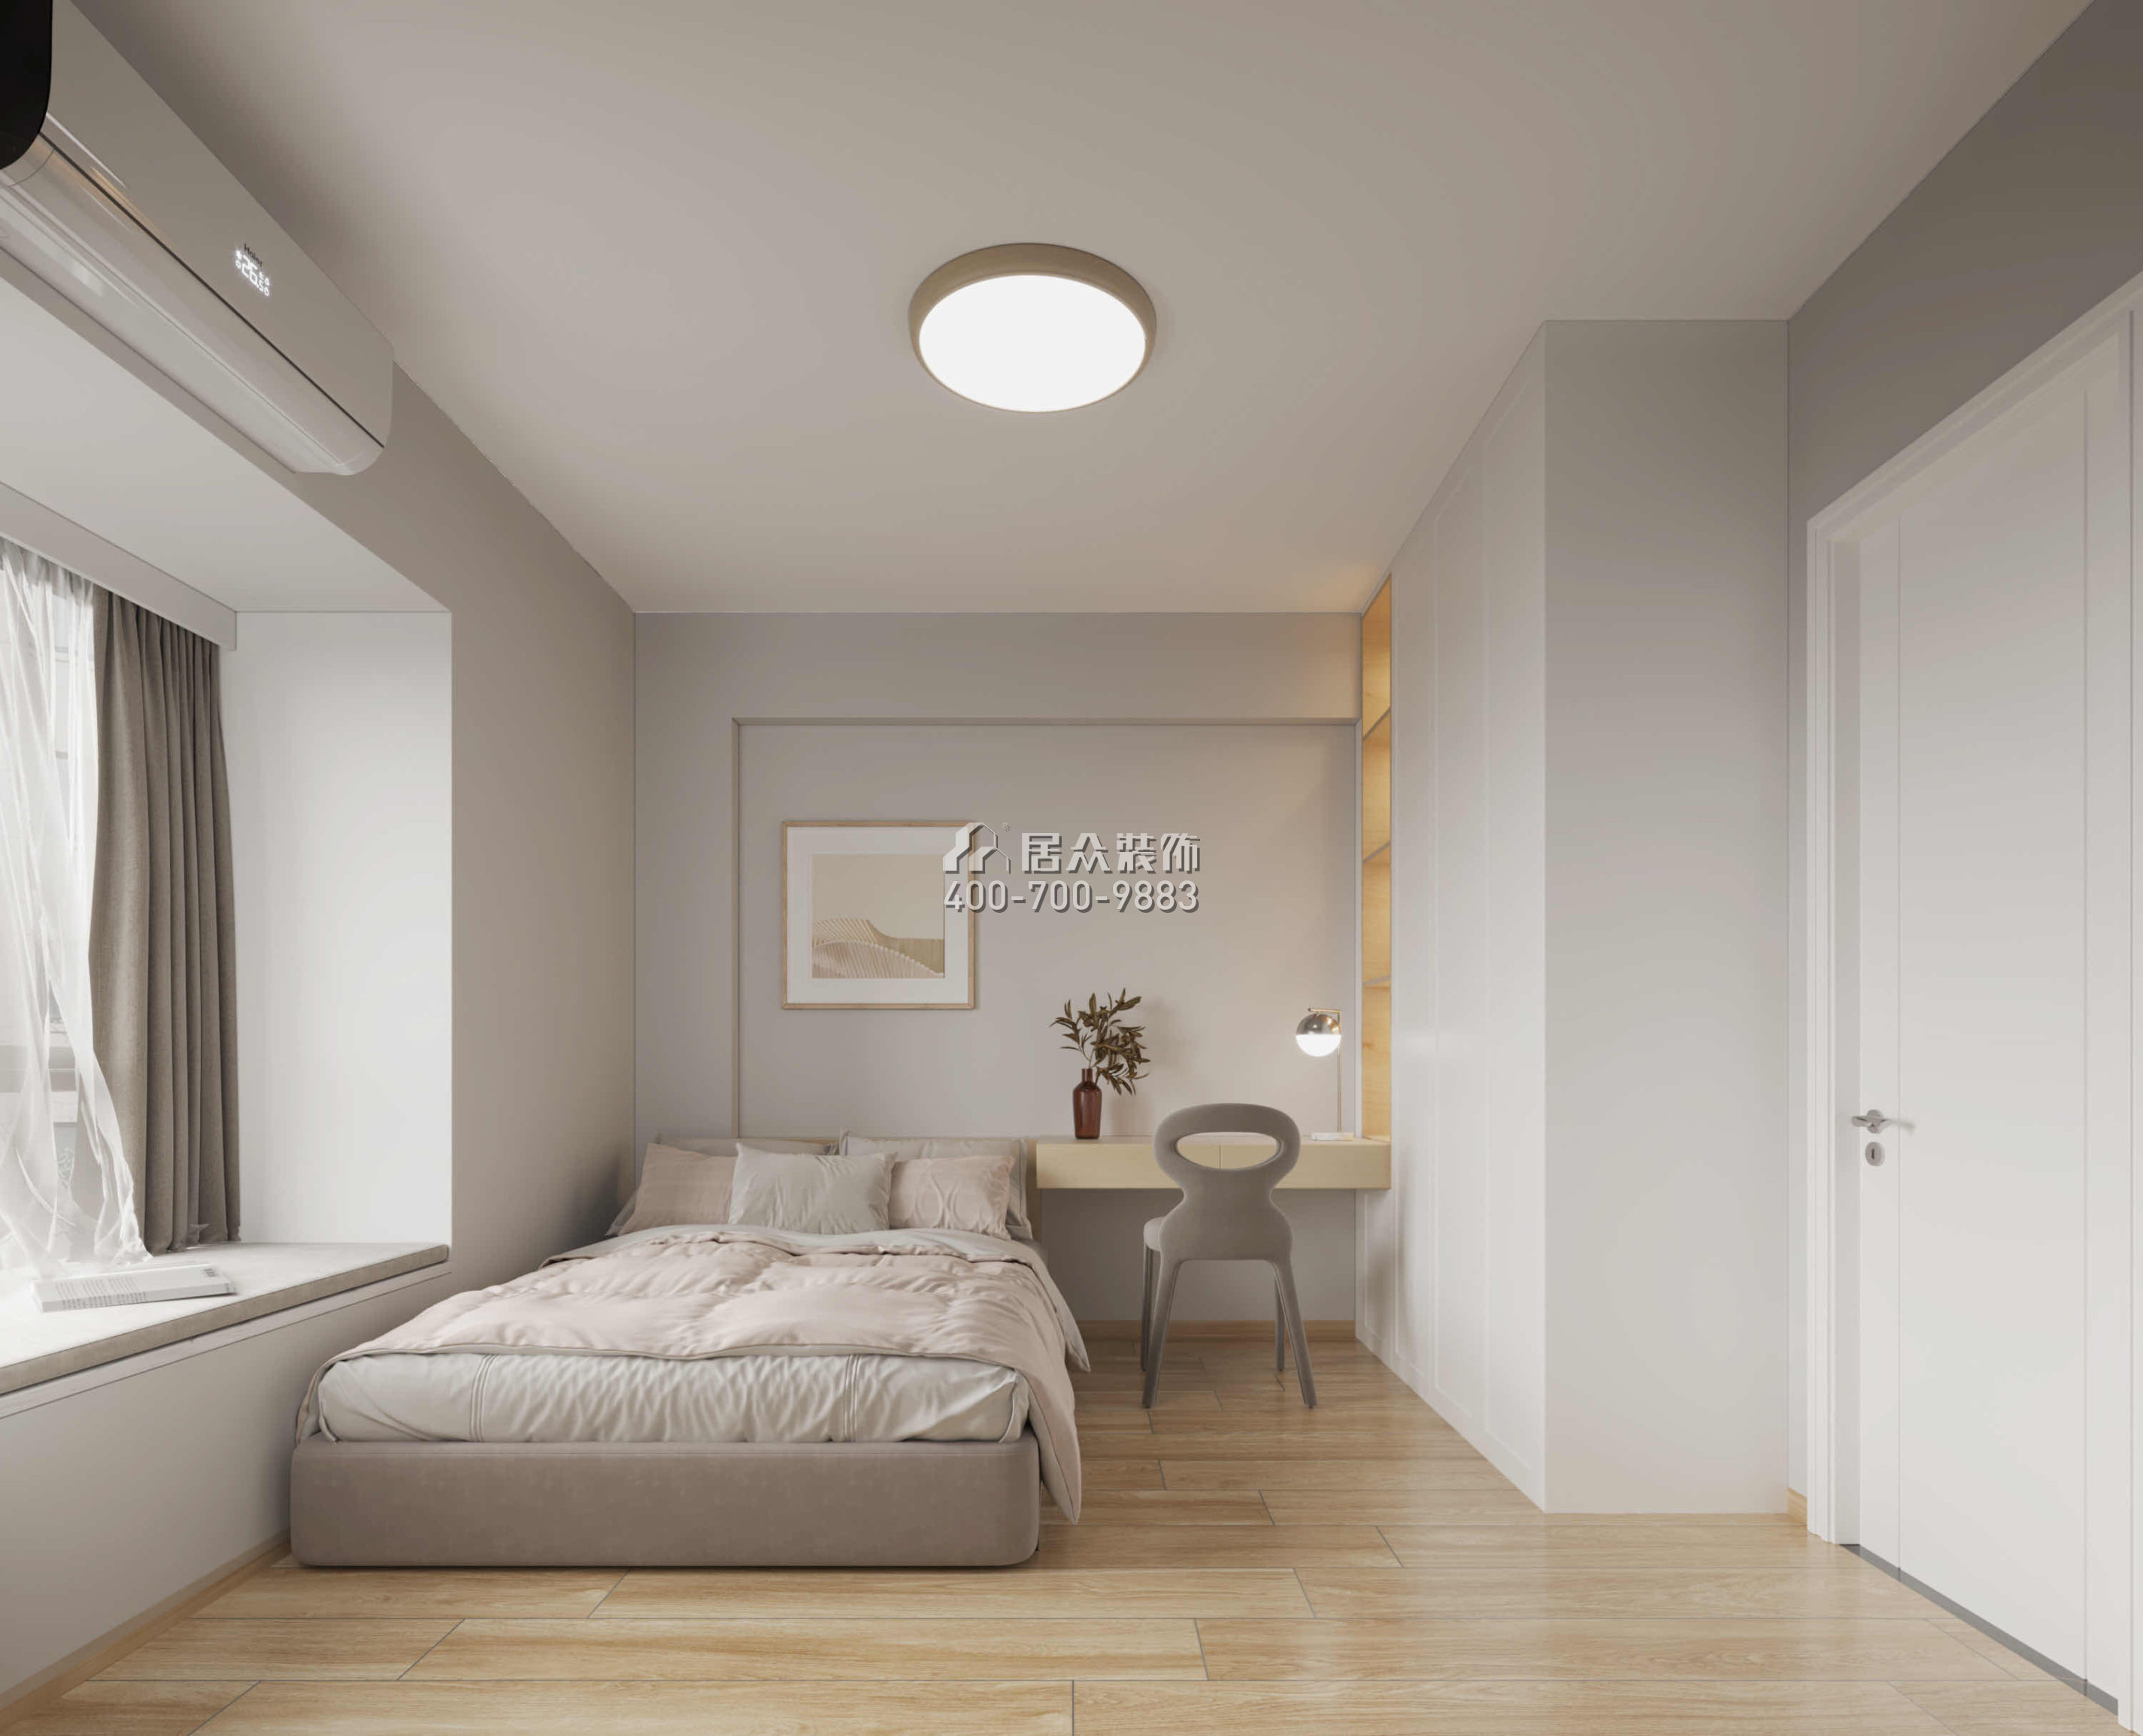 丽晶国际114平方米现代简约风格平层户型卧室装修效果图